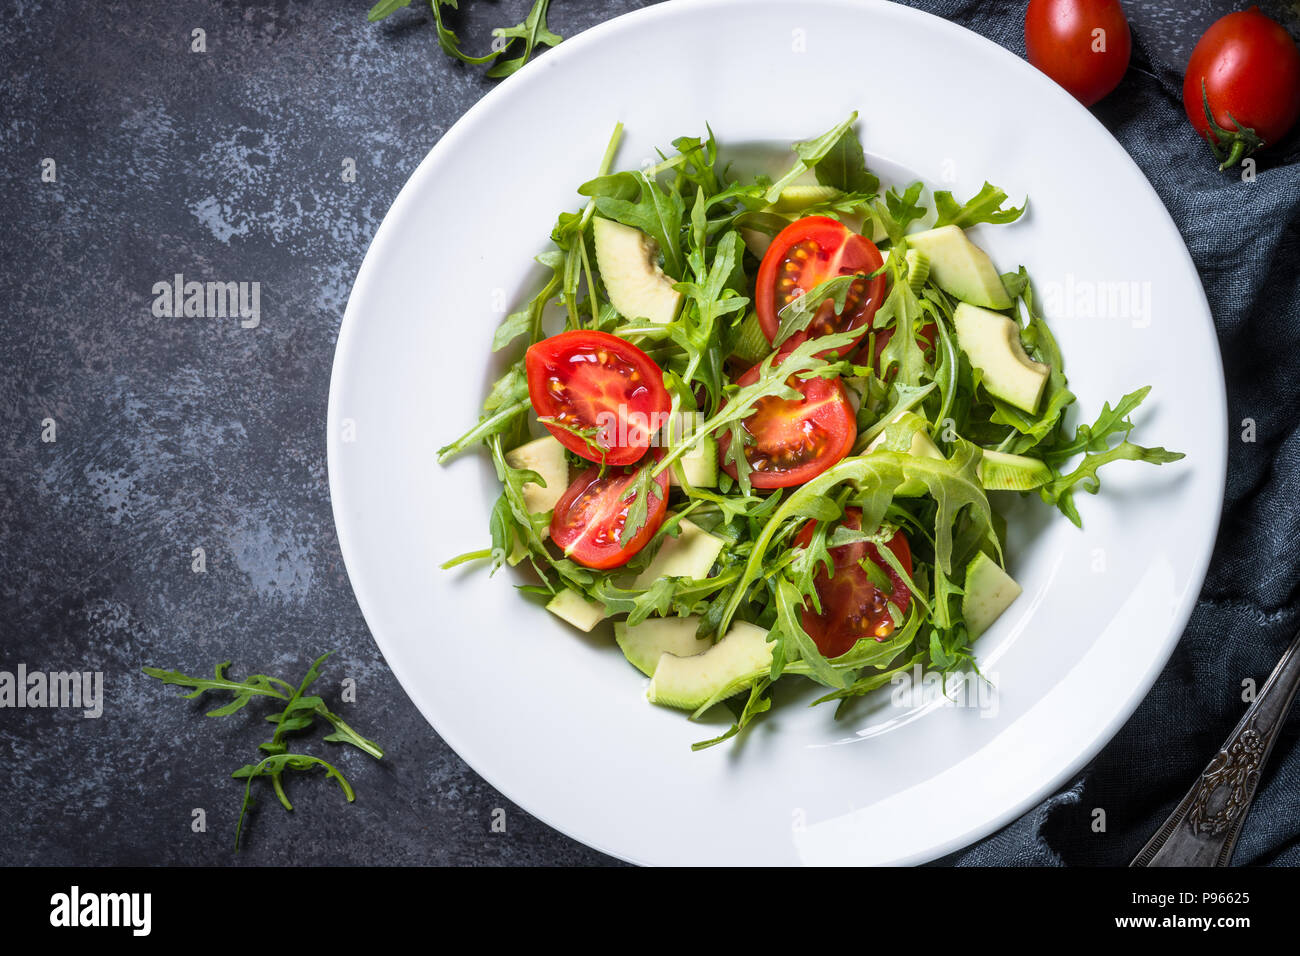 Grüner Salat aus Rucola, Avocado, Tomaten. Draufsicht auf schwarz Tisch aus Stein. Stockfoto